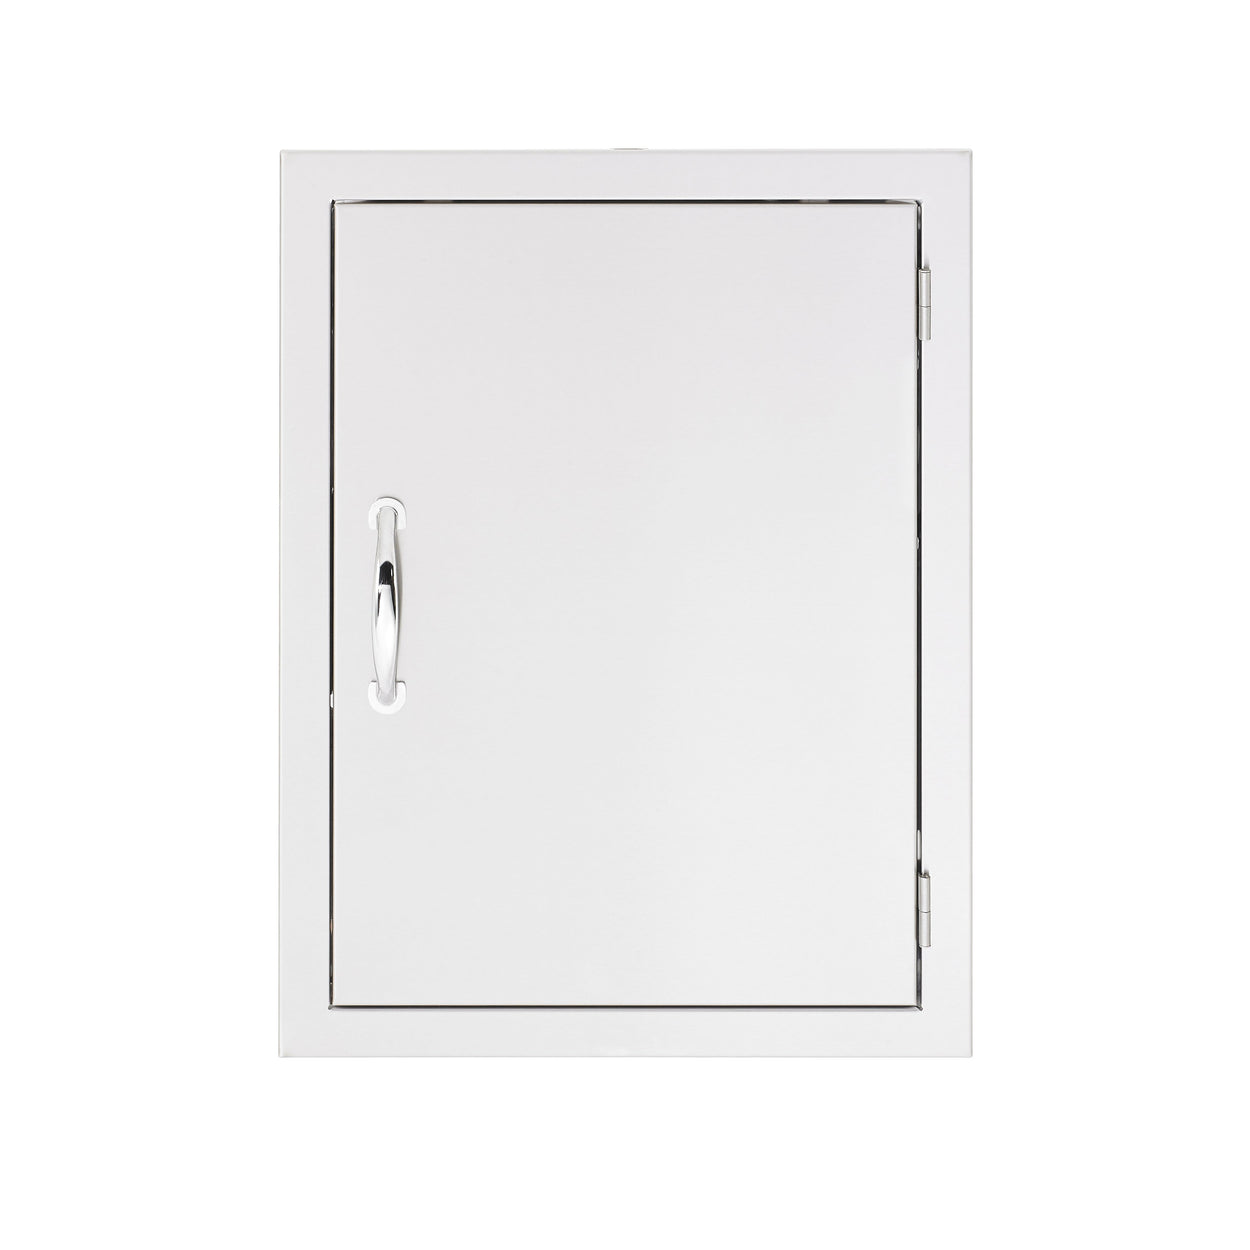 18" x 22" Vertical Access Door (Reversible-Swing)